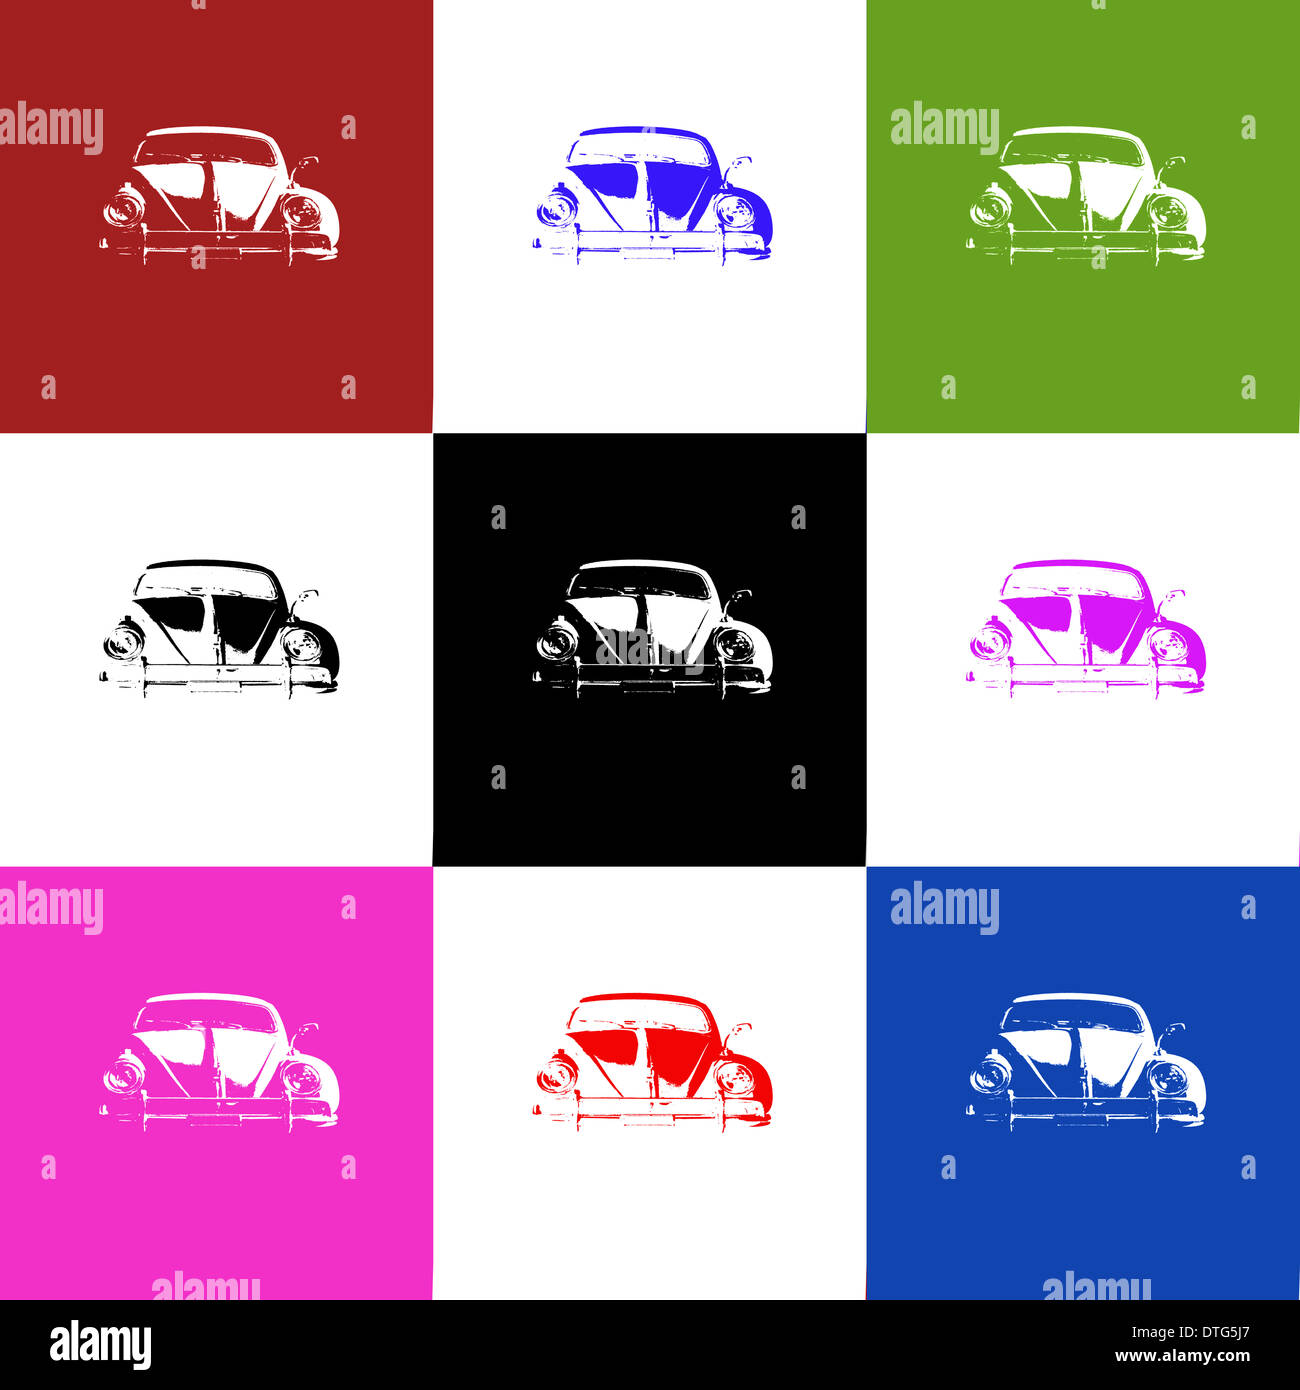 Andy Warhol pop art inspired image of Volkswagen Beetles Stock Photo